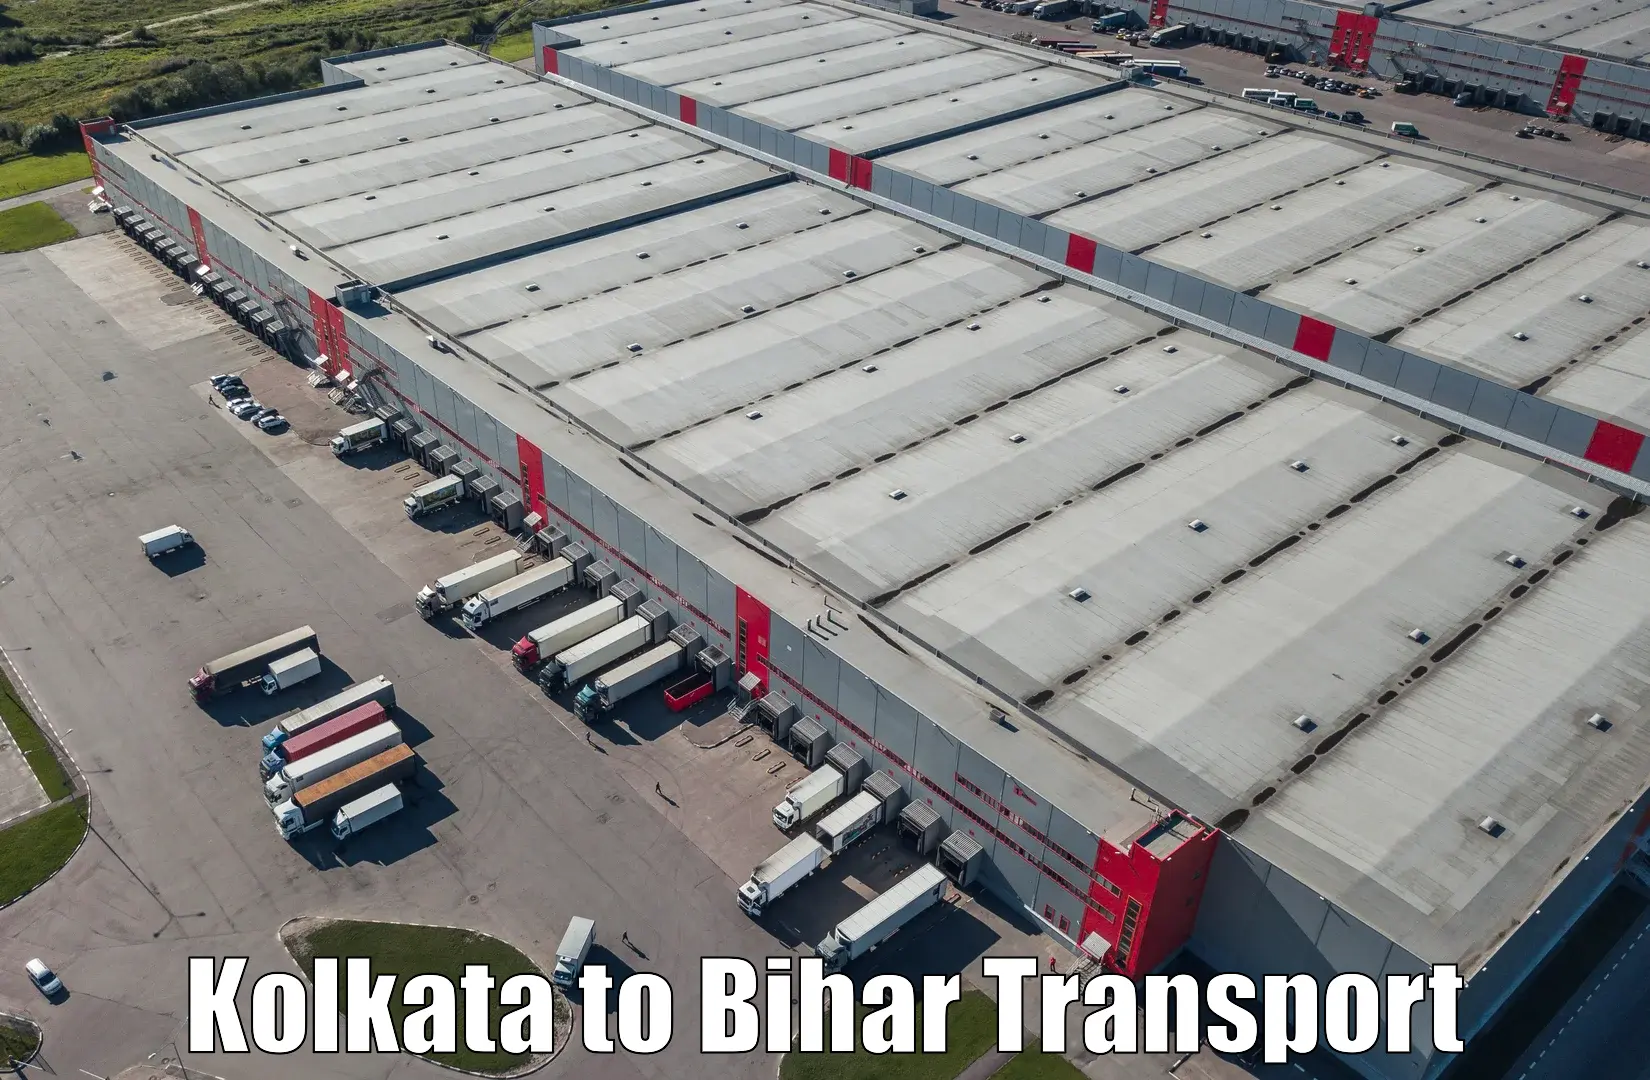 Bike shipping service in Kolkata to Biraul